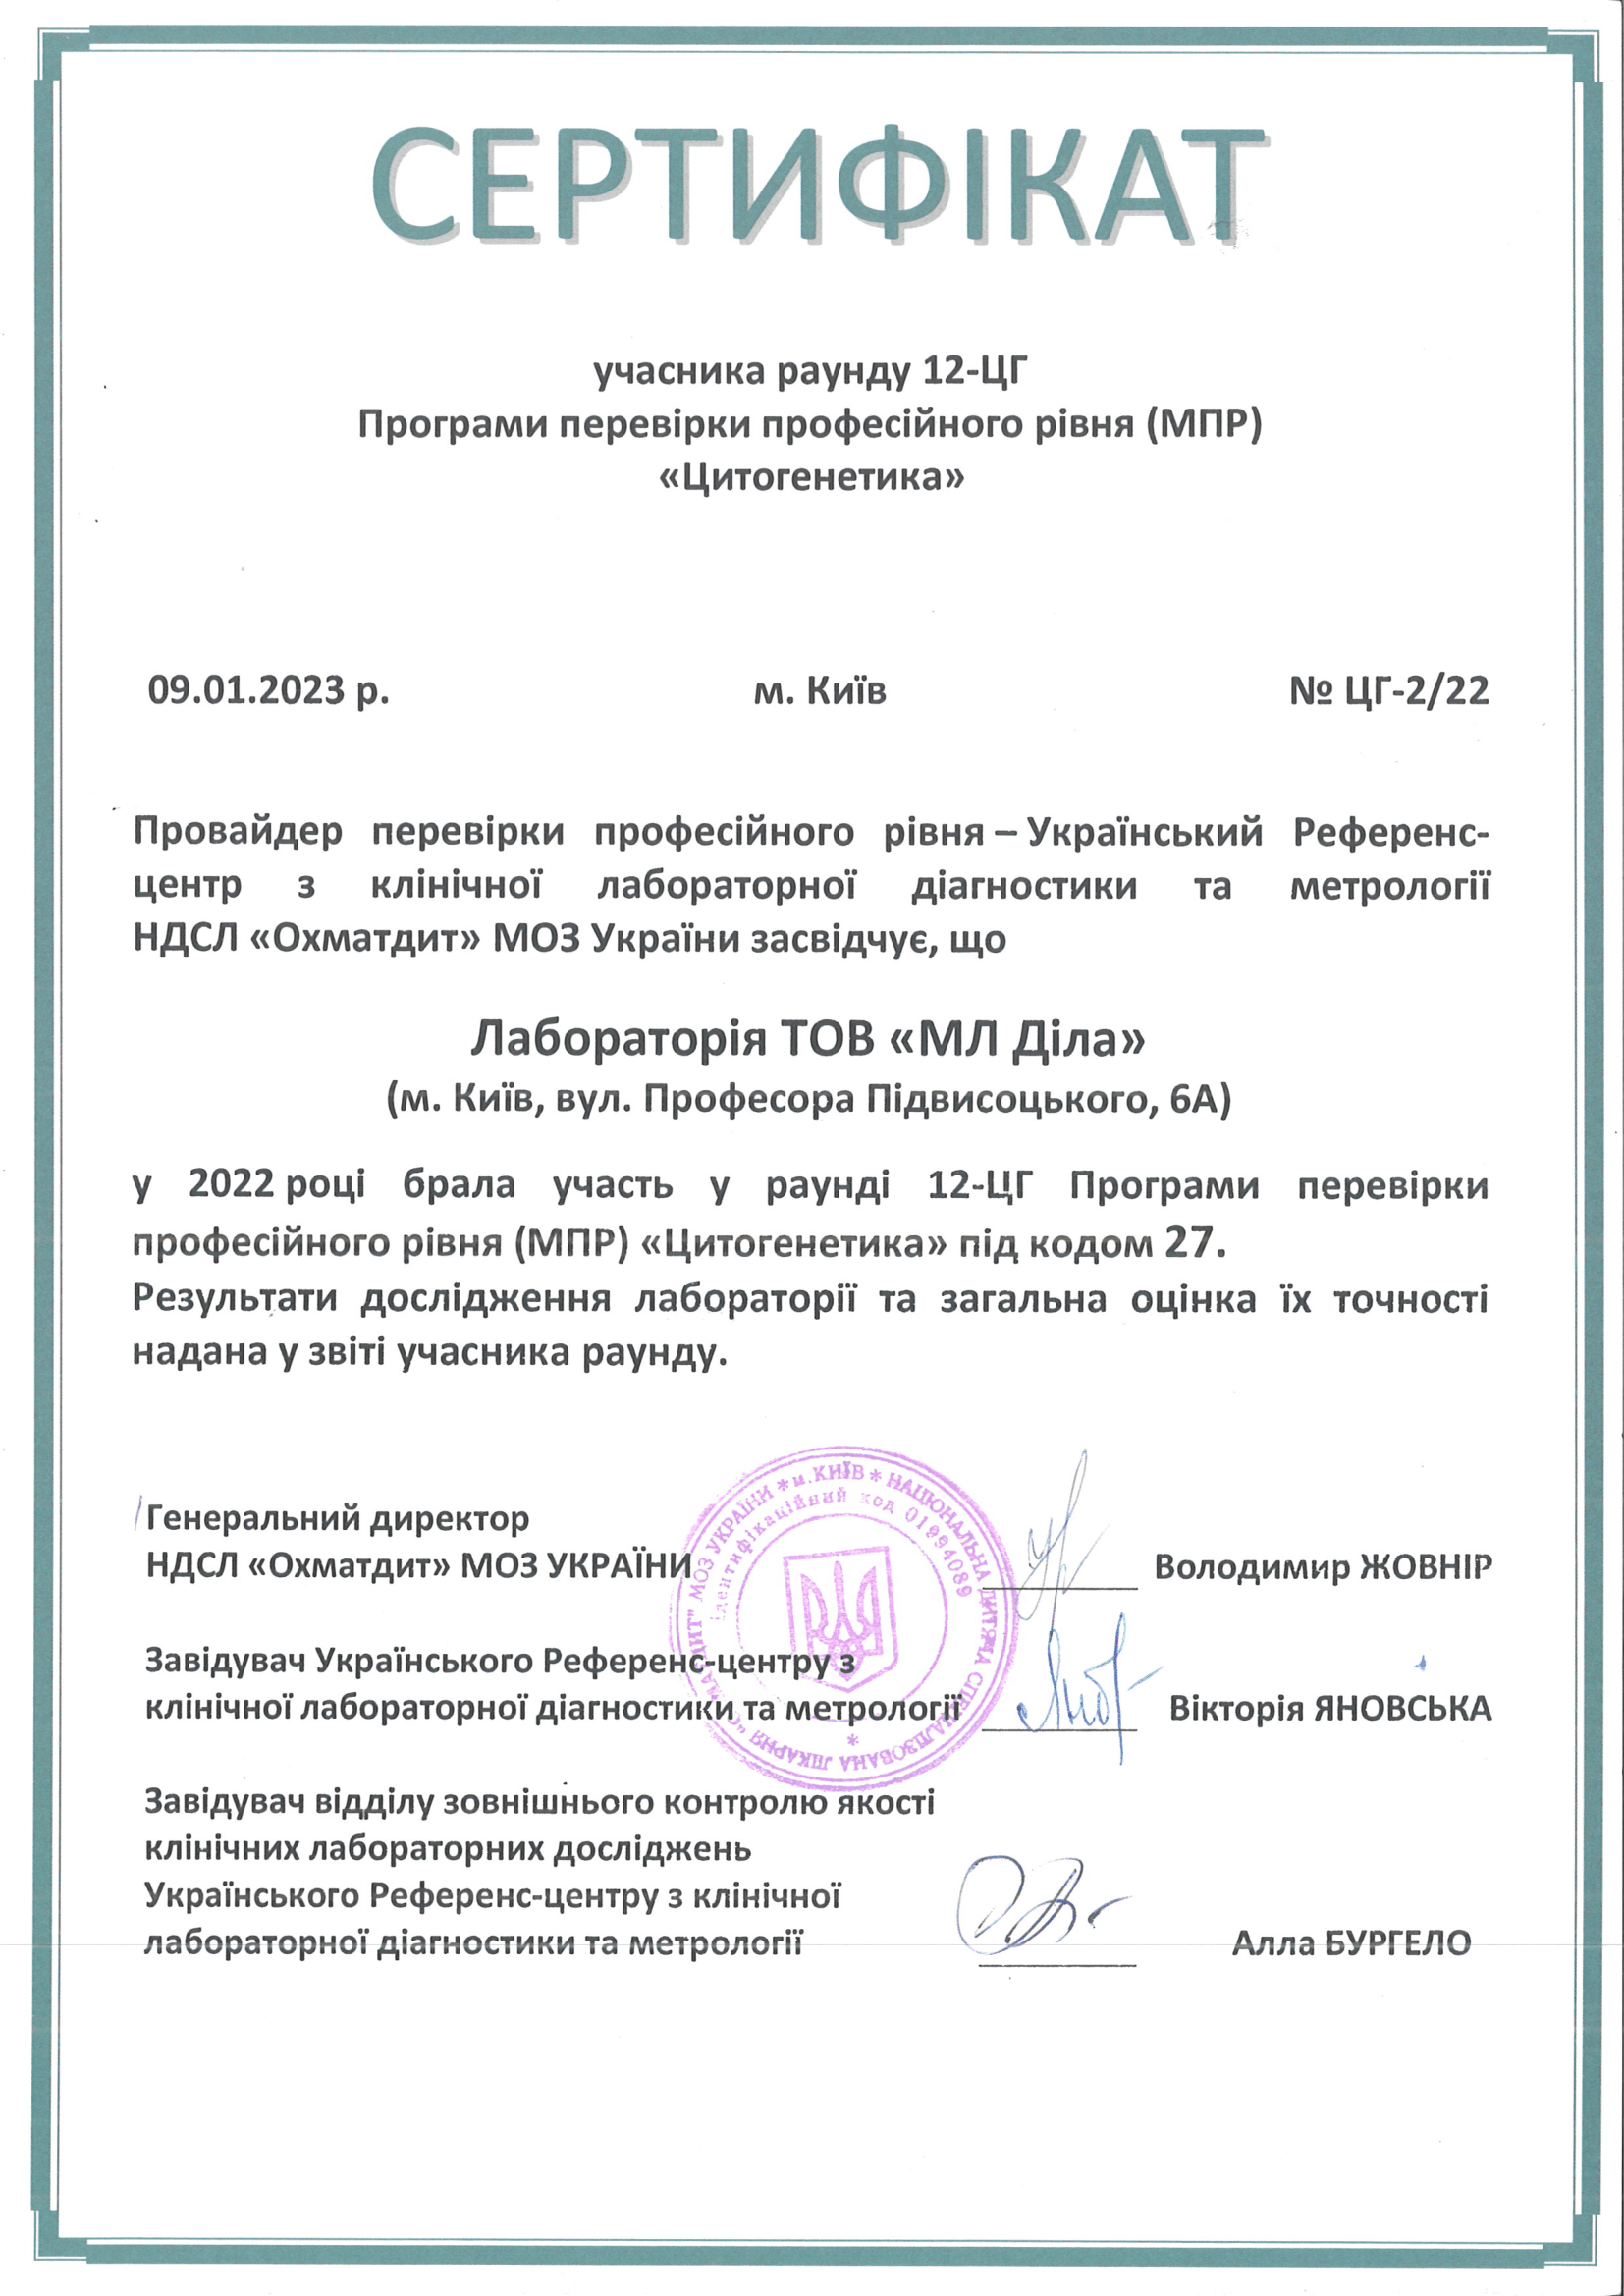 Фото - Сертифікат учасника раунду 12-ЦГ МРП "Цитогенетика" 